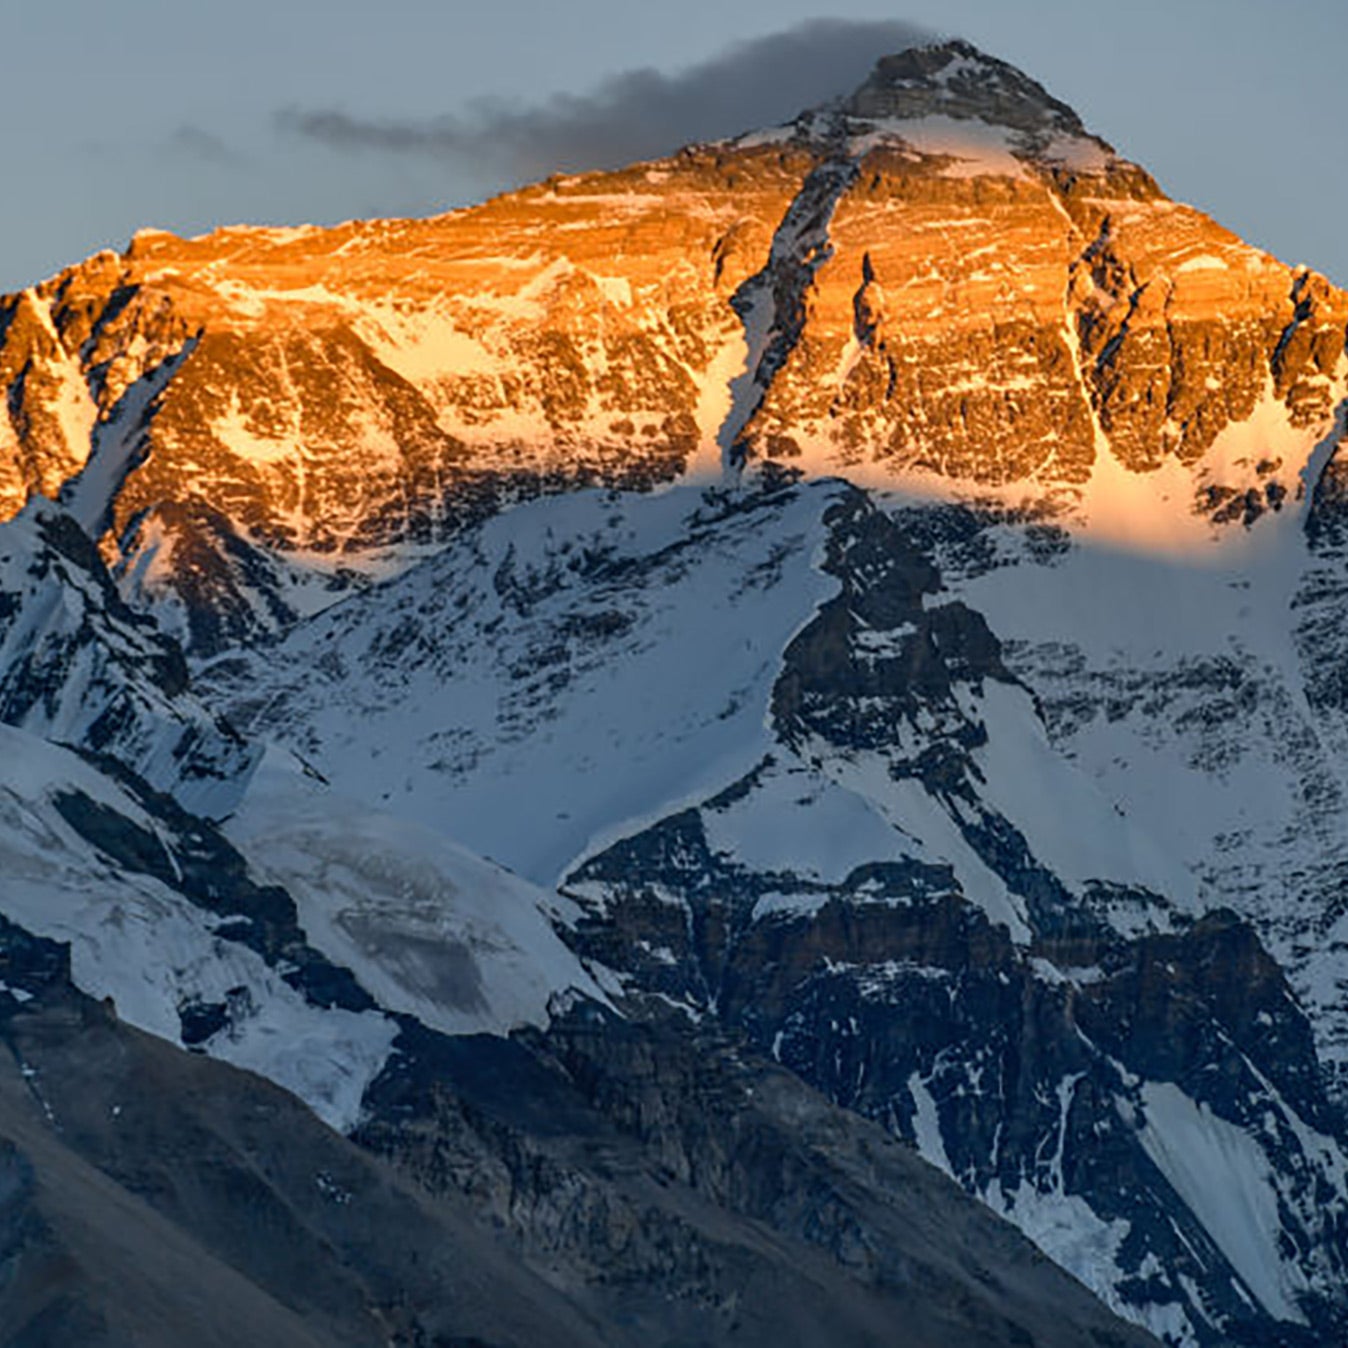 Sunset on Mount Everest